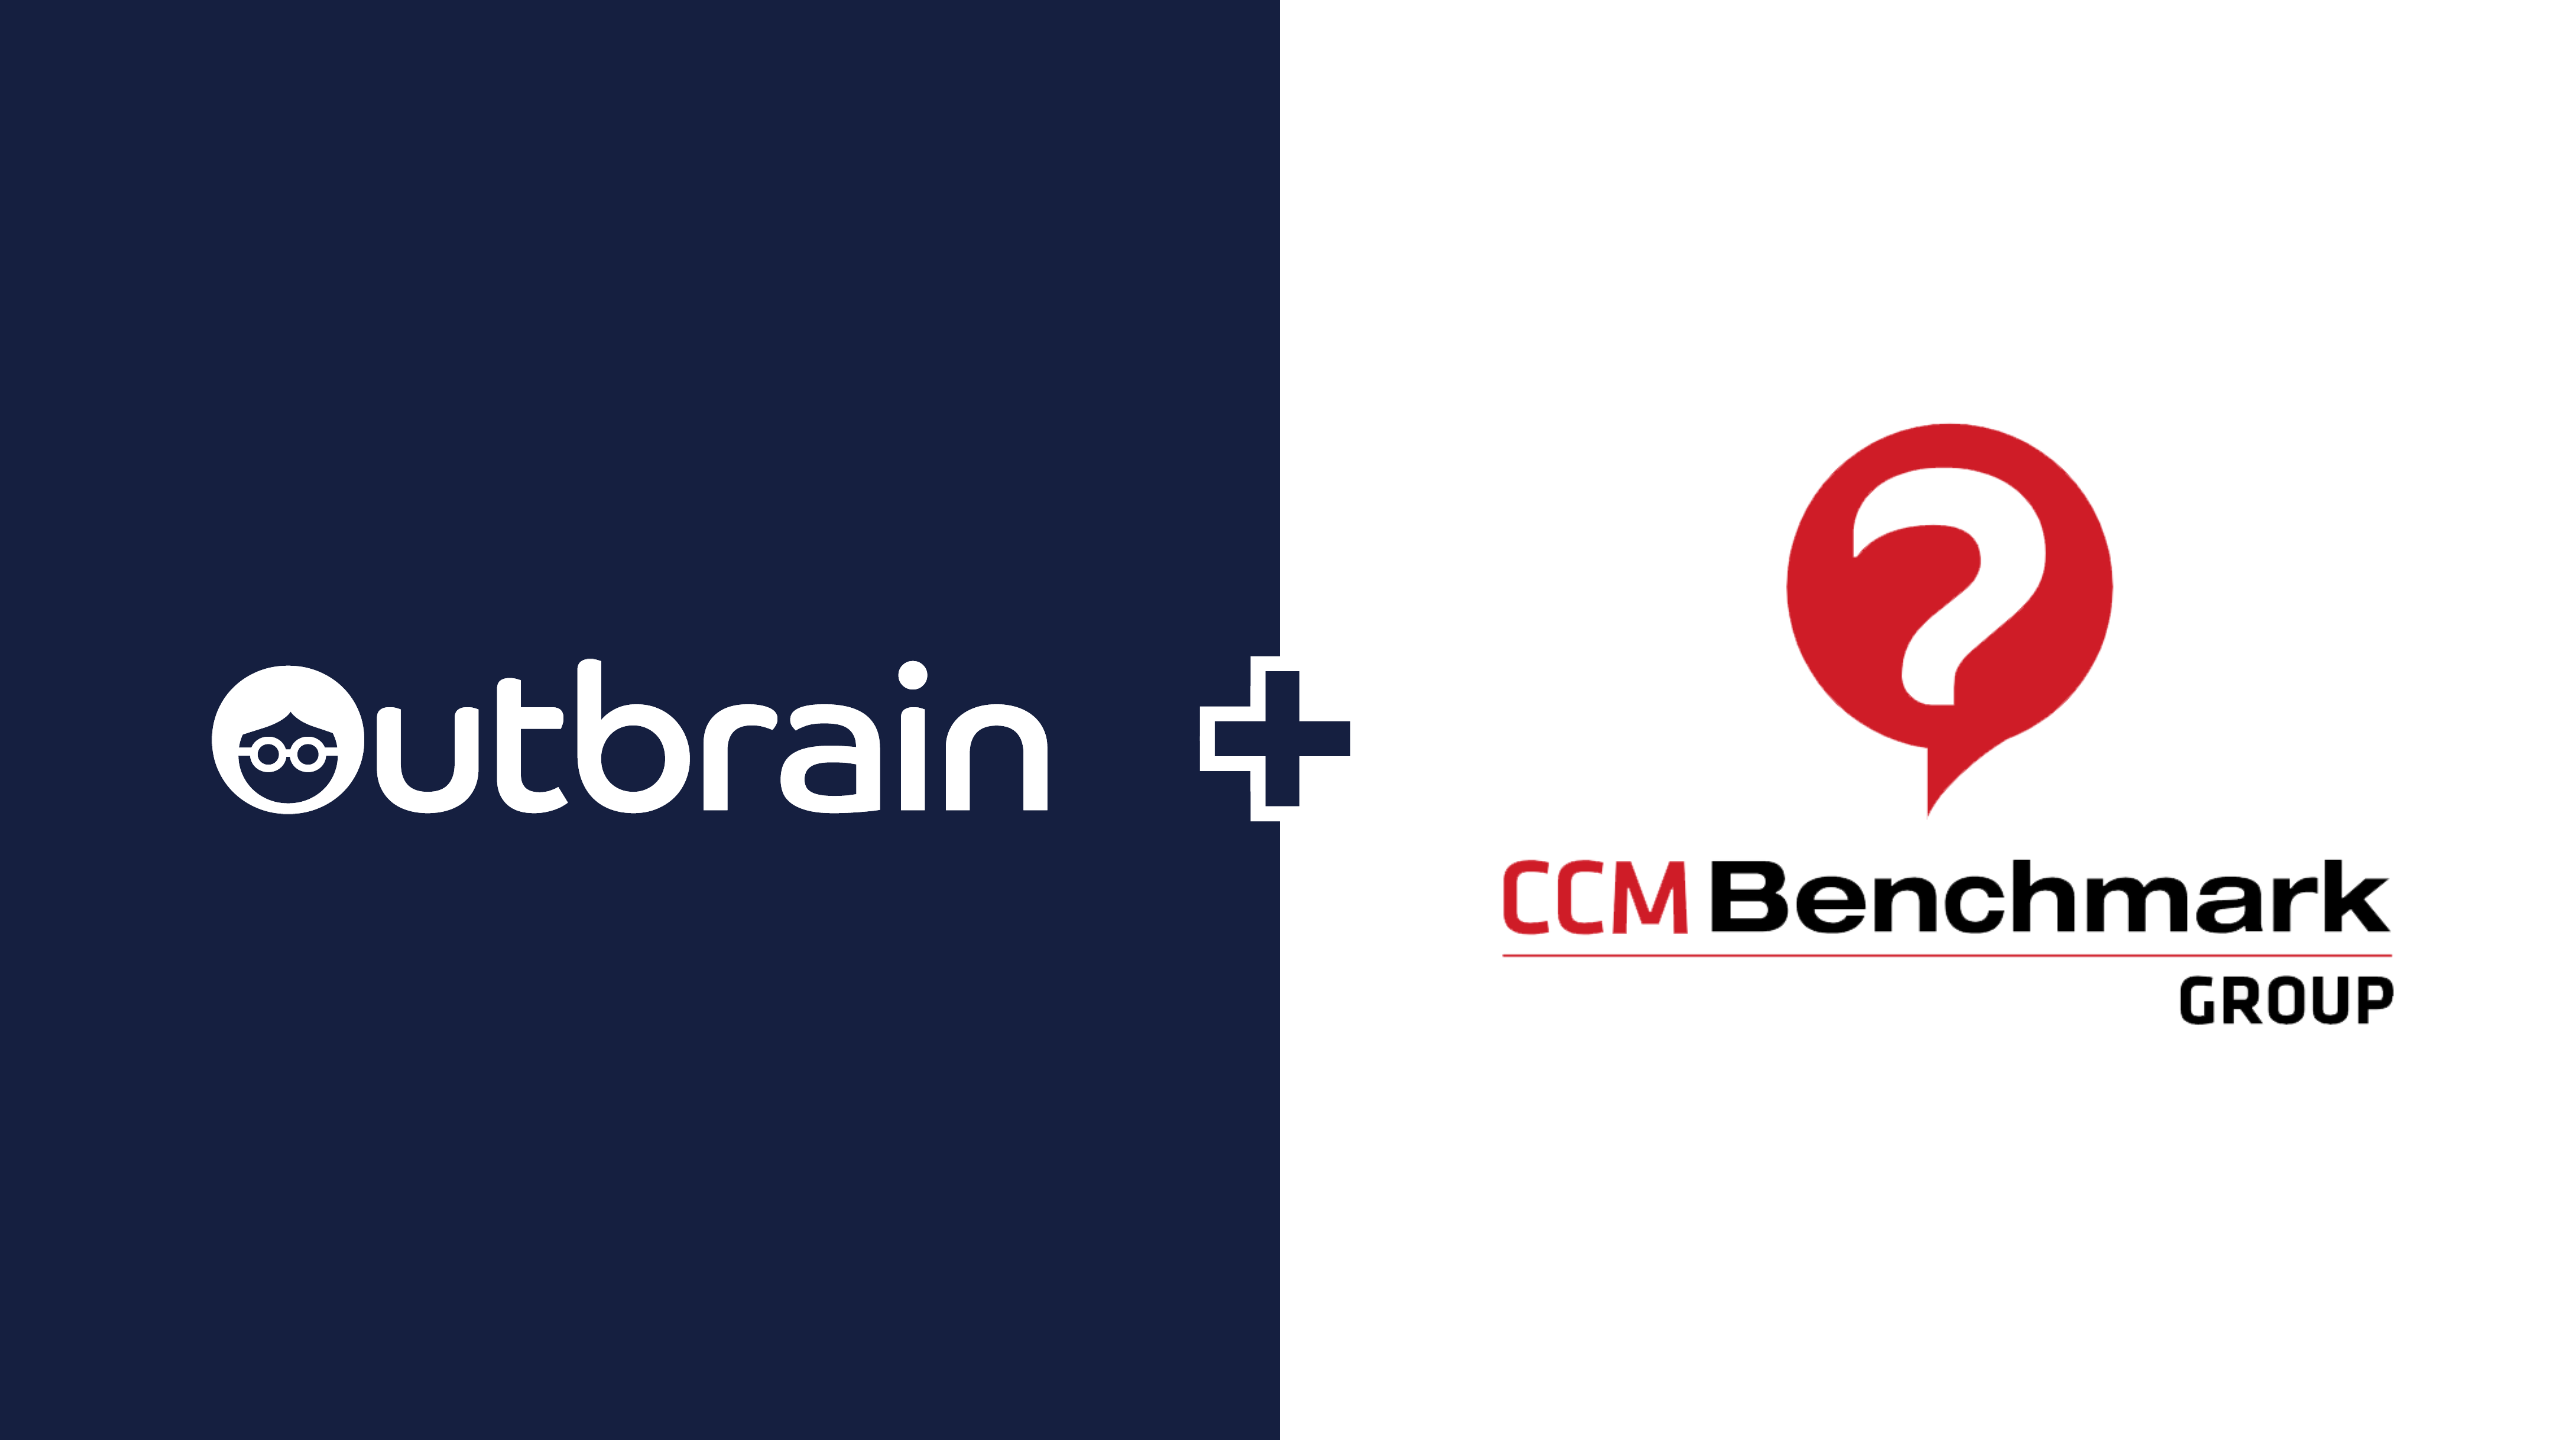 Le groupe CCM Benchmark renouvelle son partenariat avec Outbrain